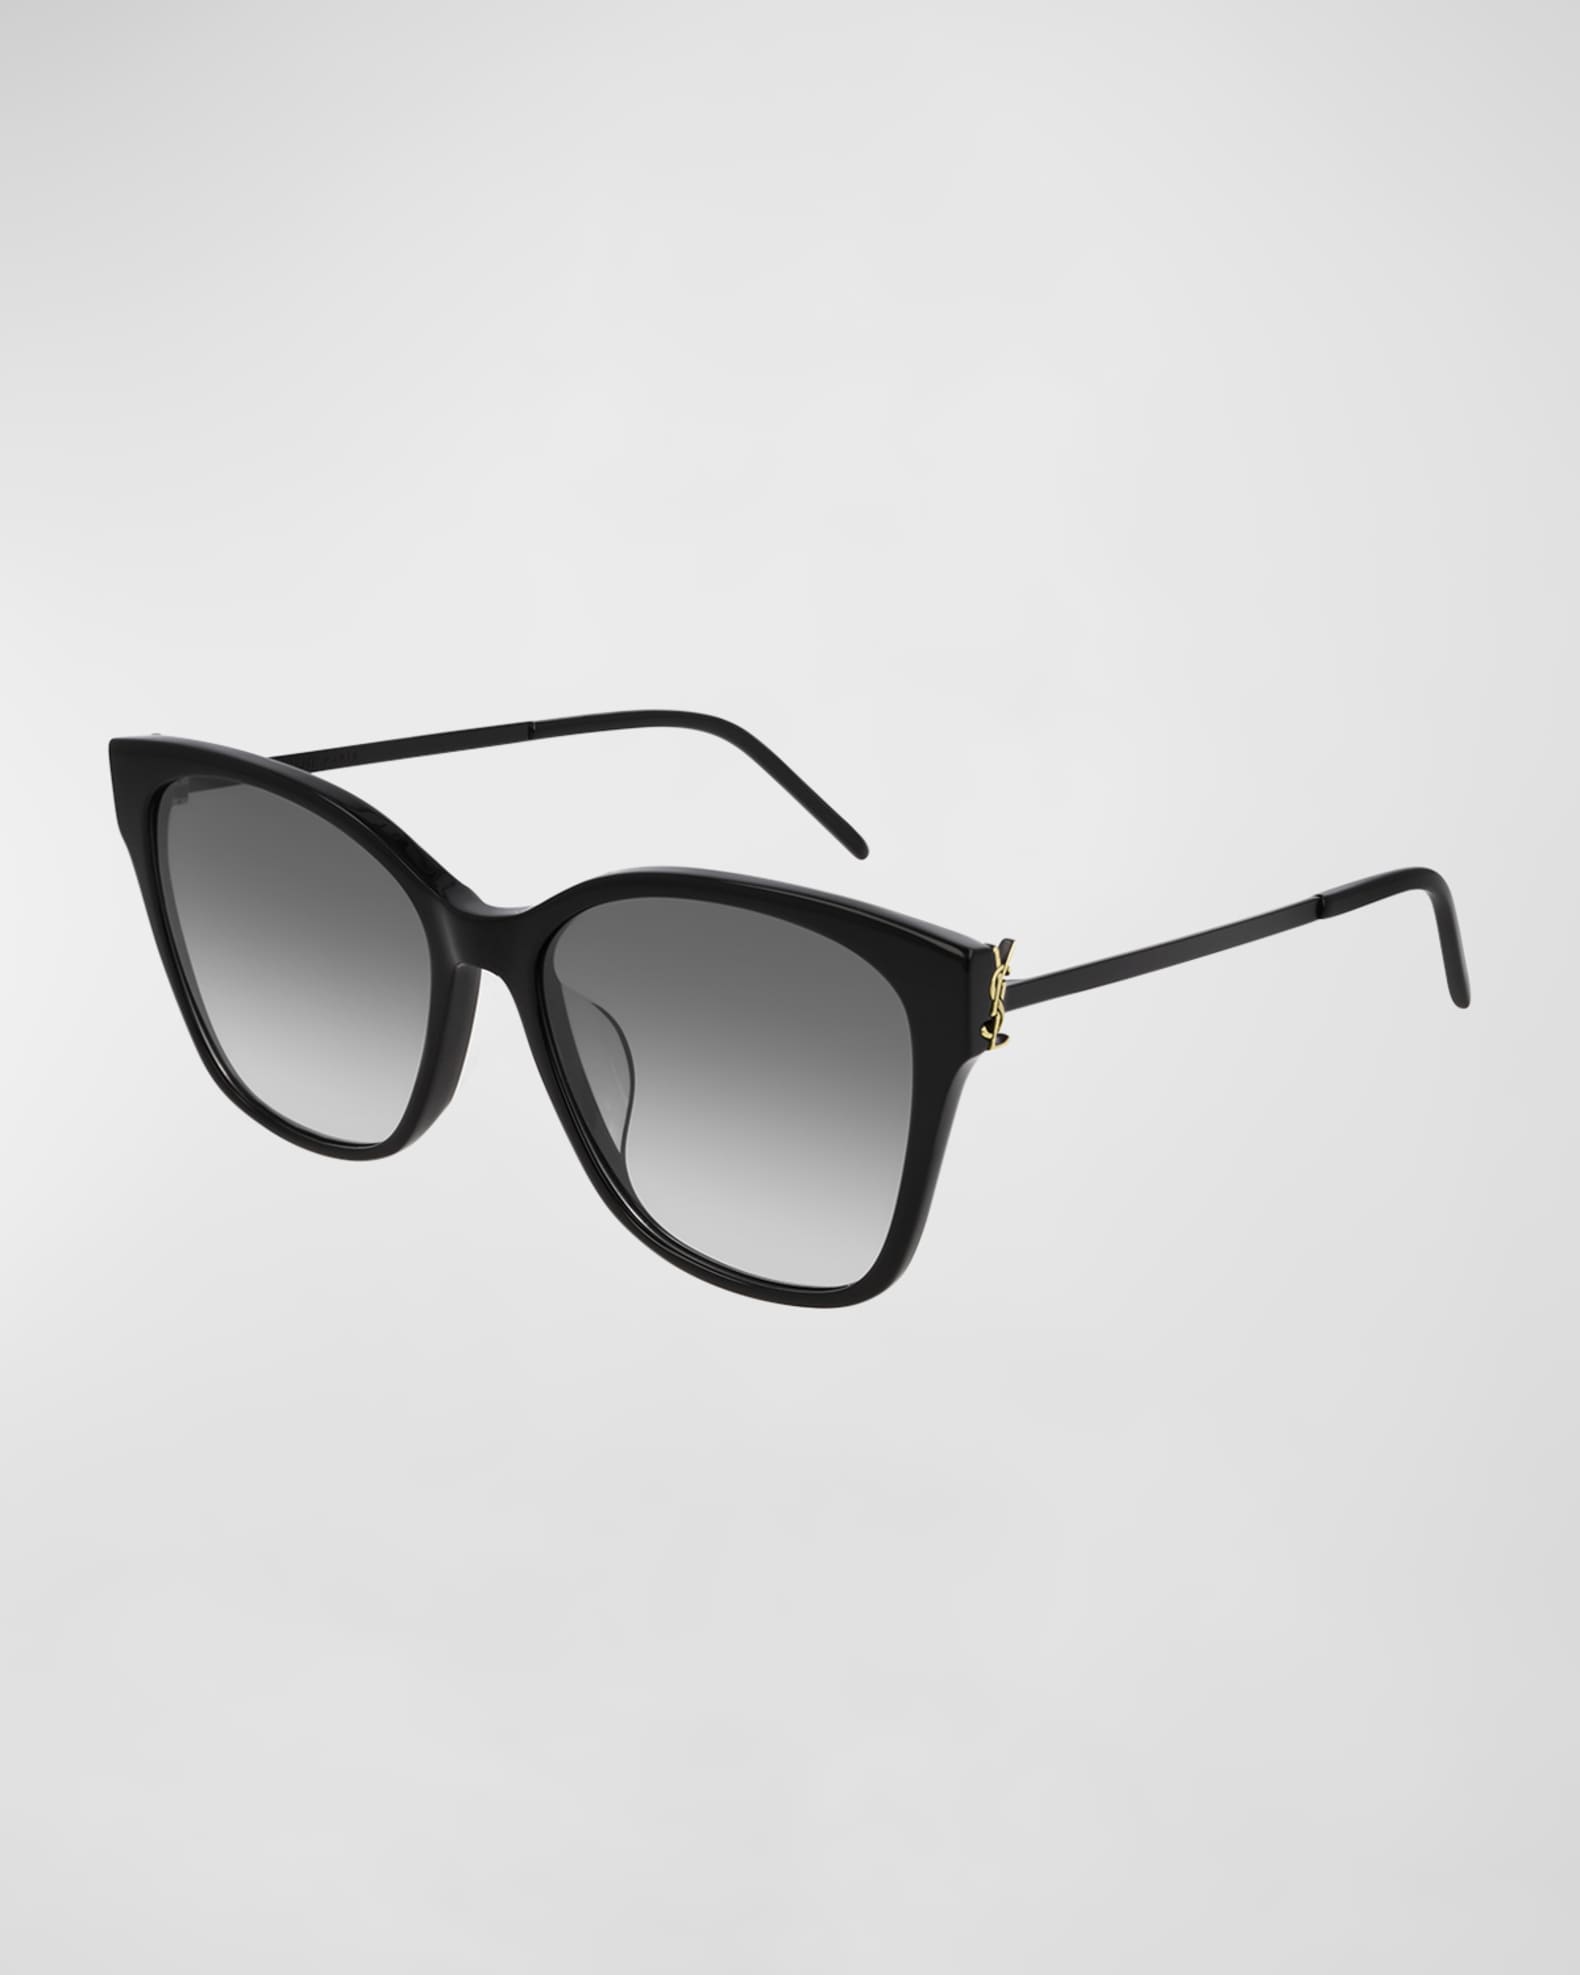 Saint Laurent Square Acetate & Metal Sunglasses | Neiman Marcus